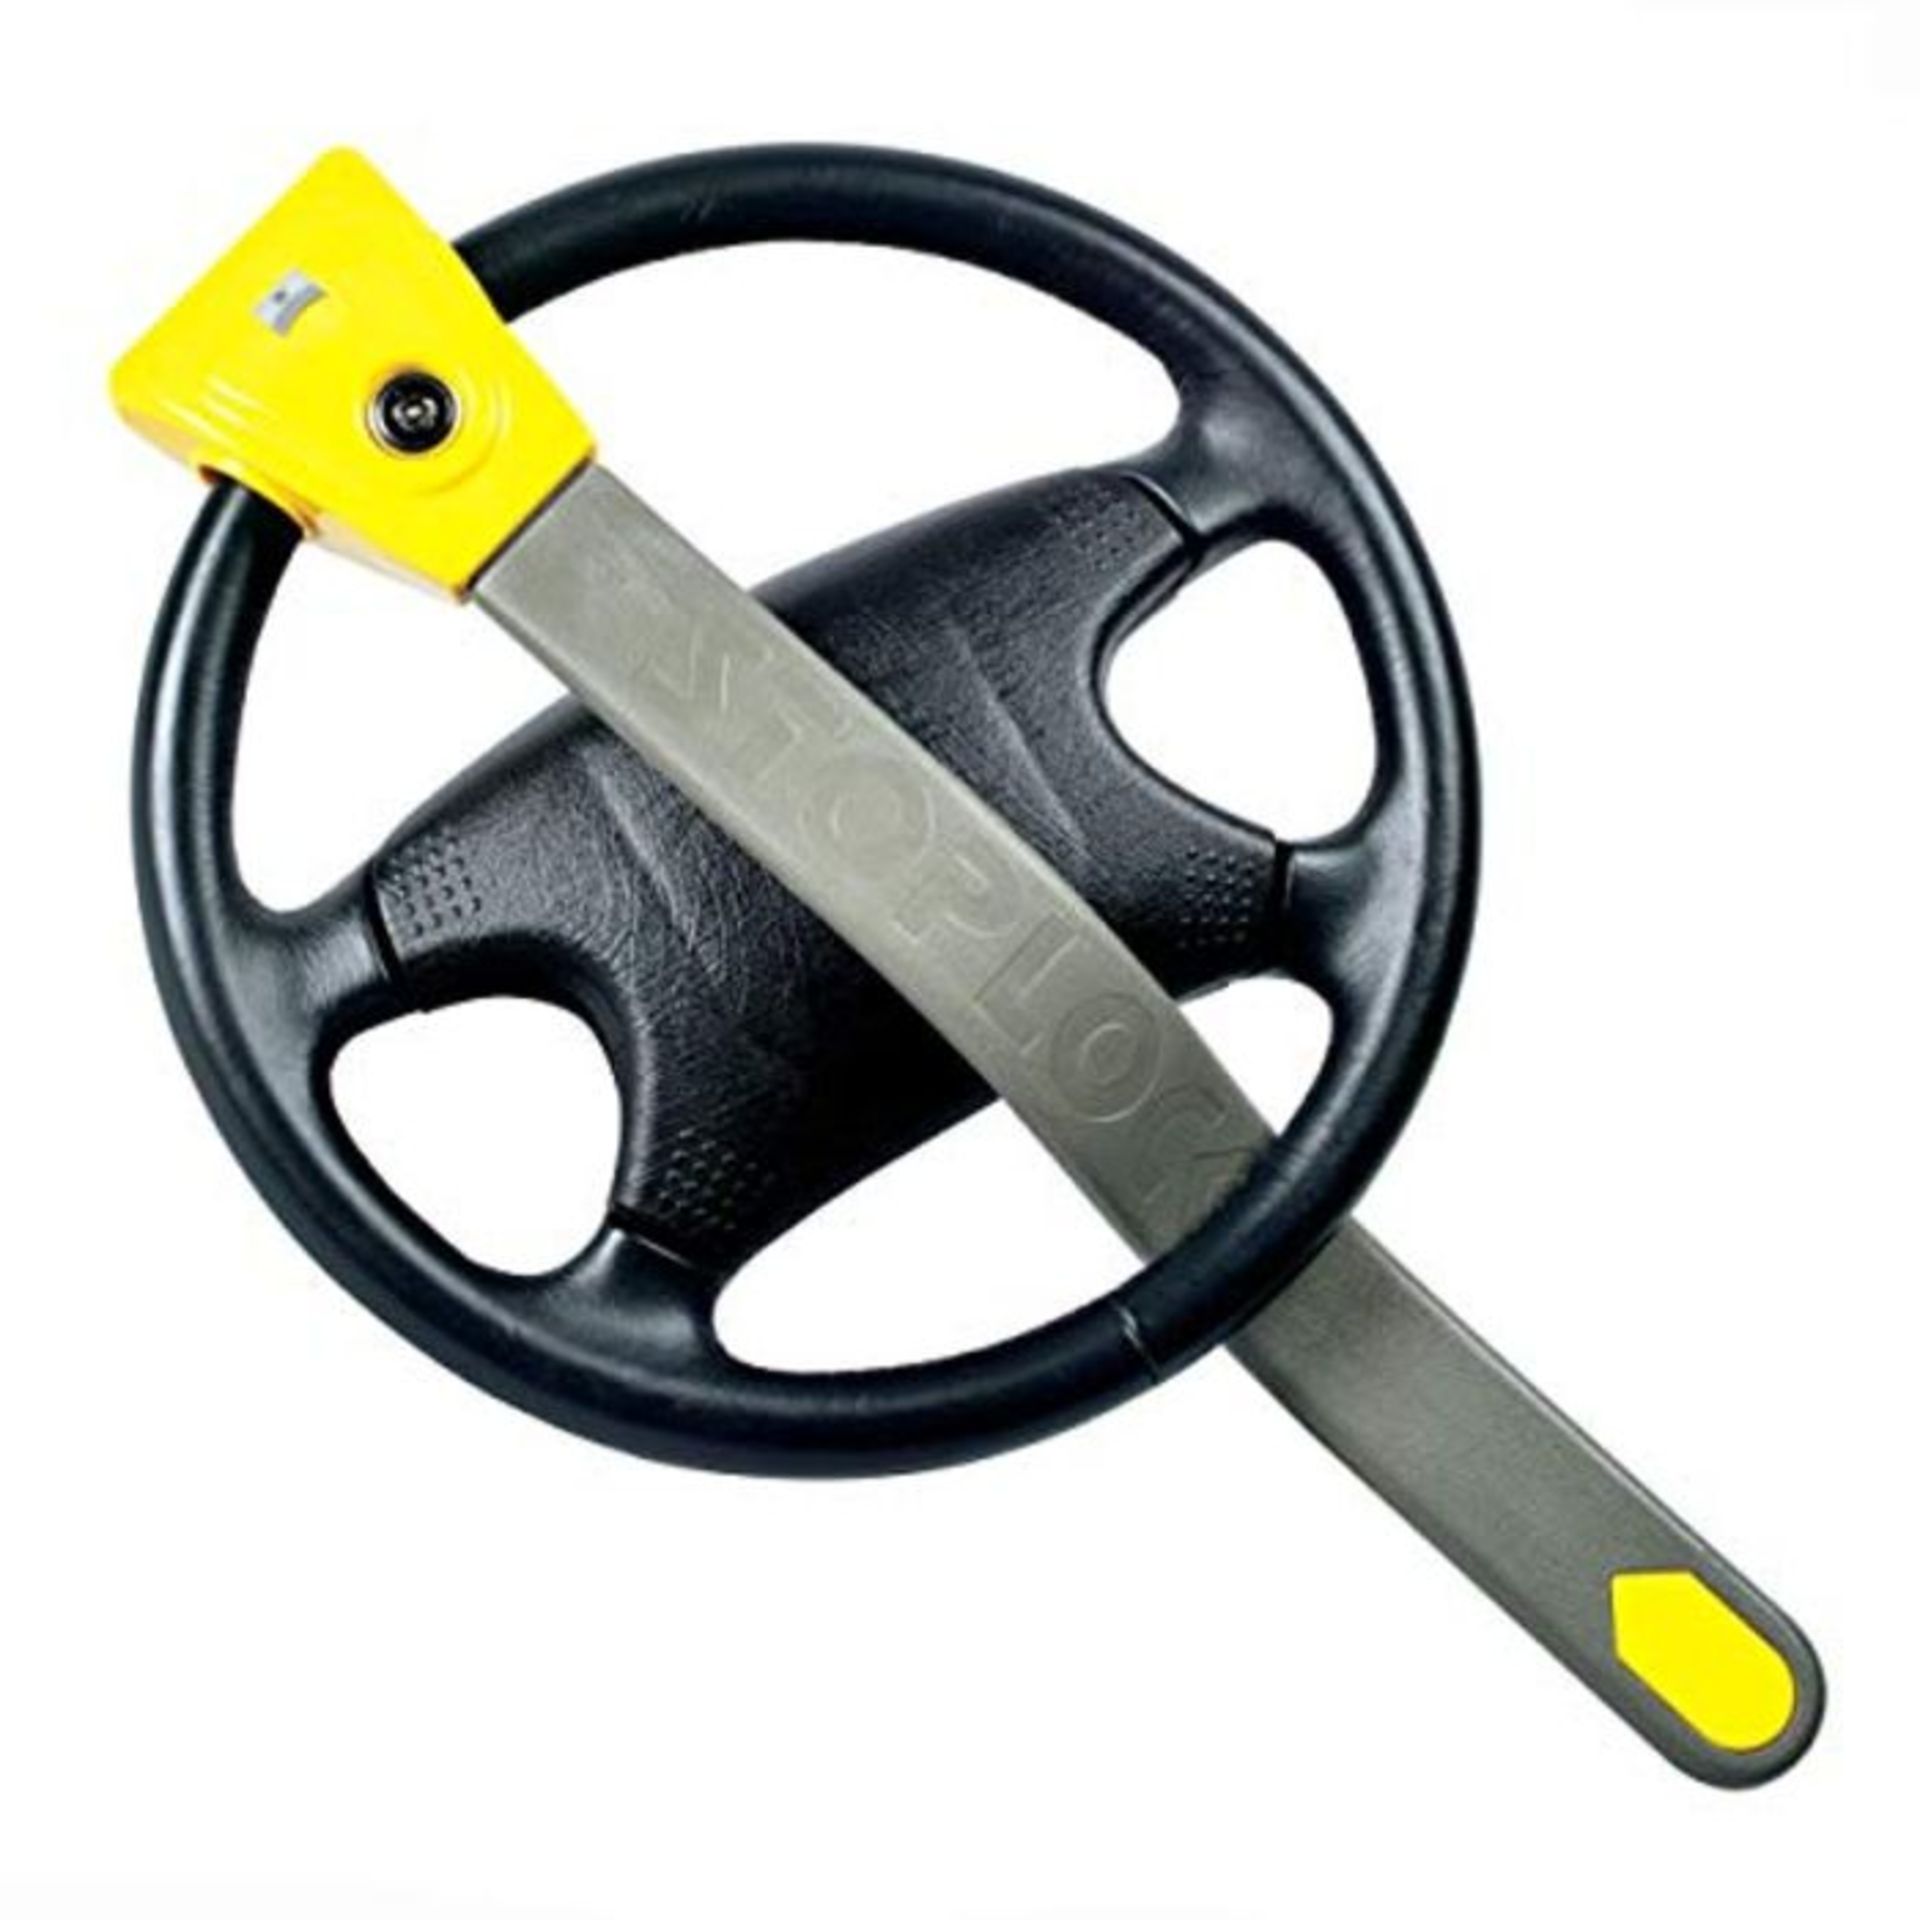 [INCOMPLETE] Stoplock 'Original' Car Steering Wheel Lock W/Keys HG 134-59 - Anti-Theft